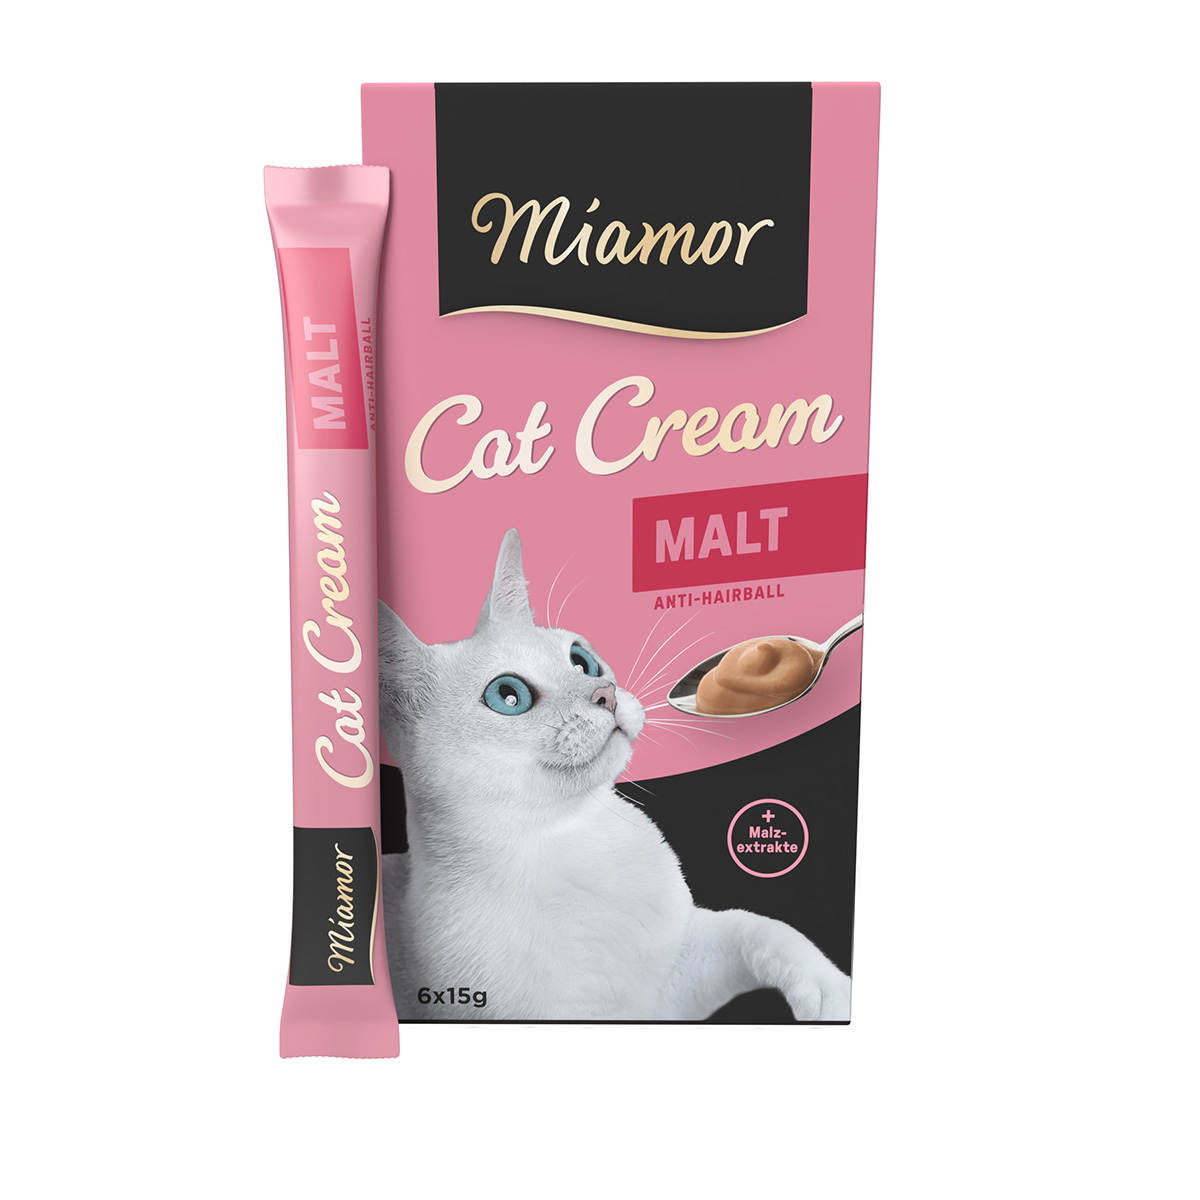 Miamor Cat Cream Malt 6x15g